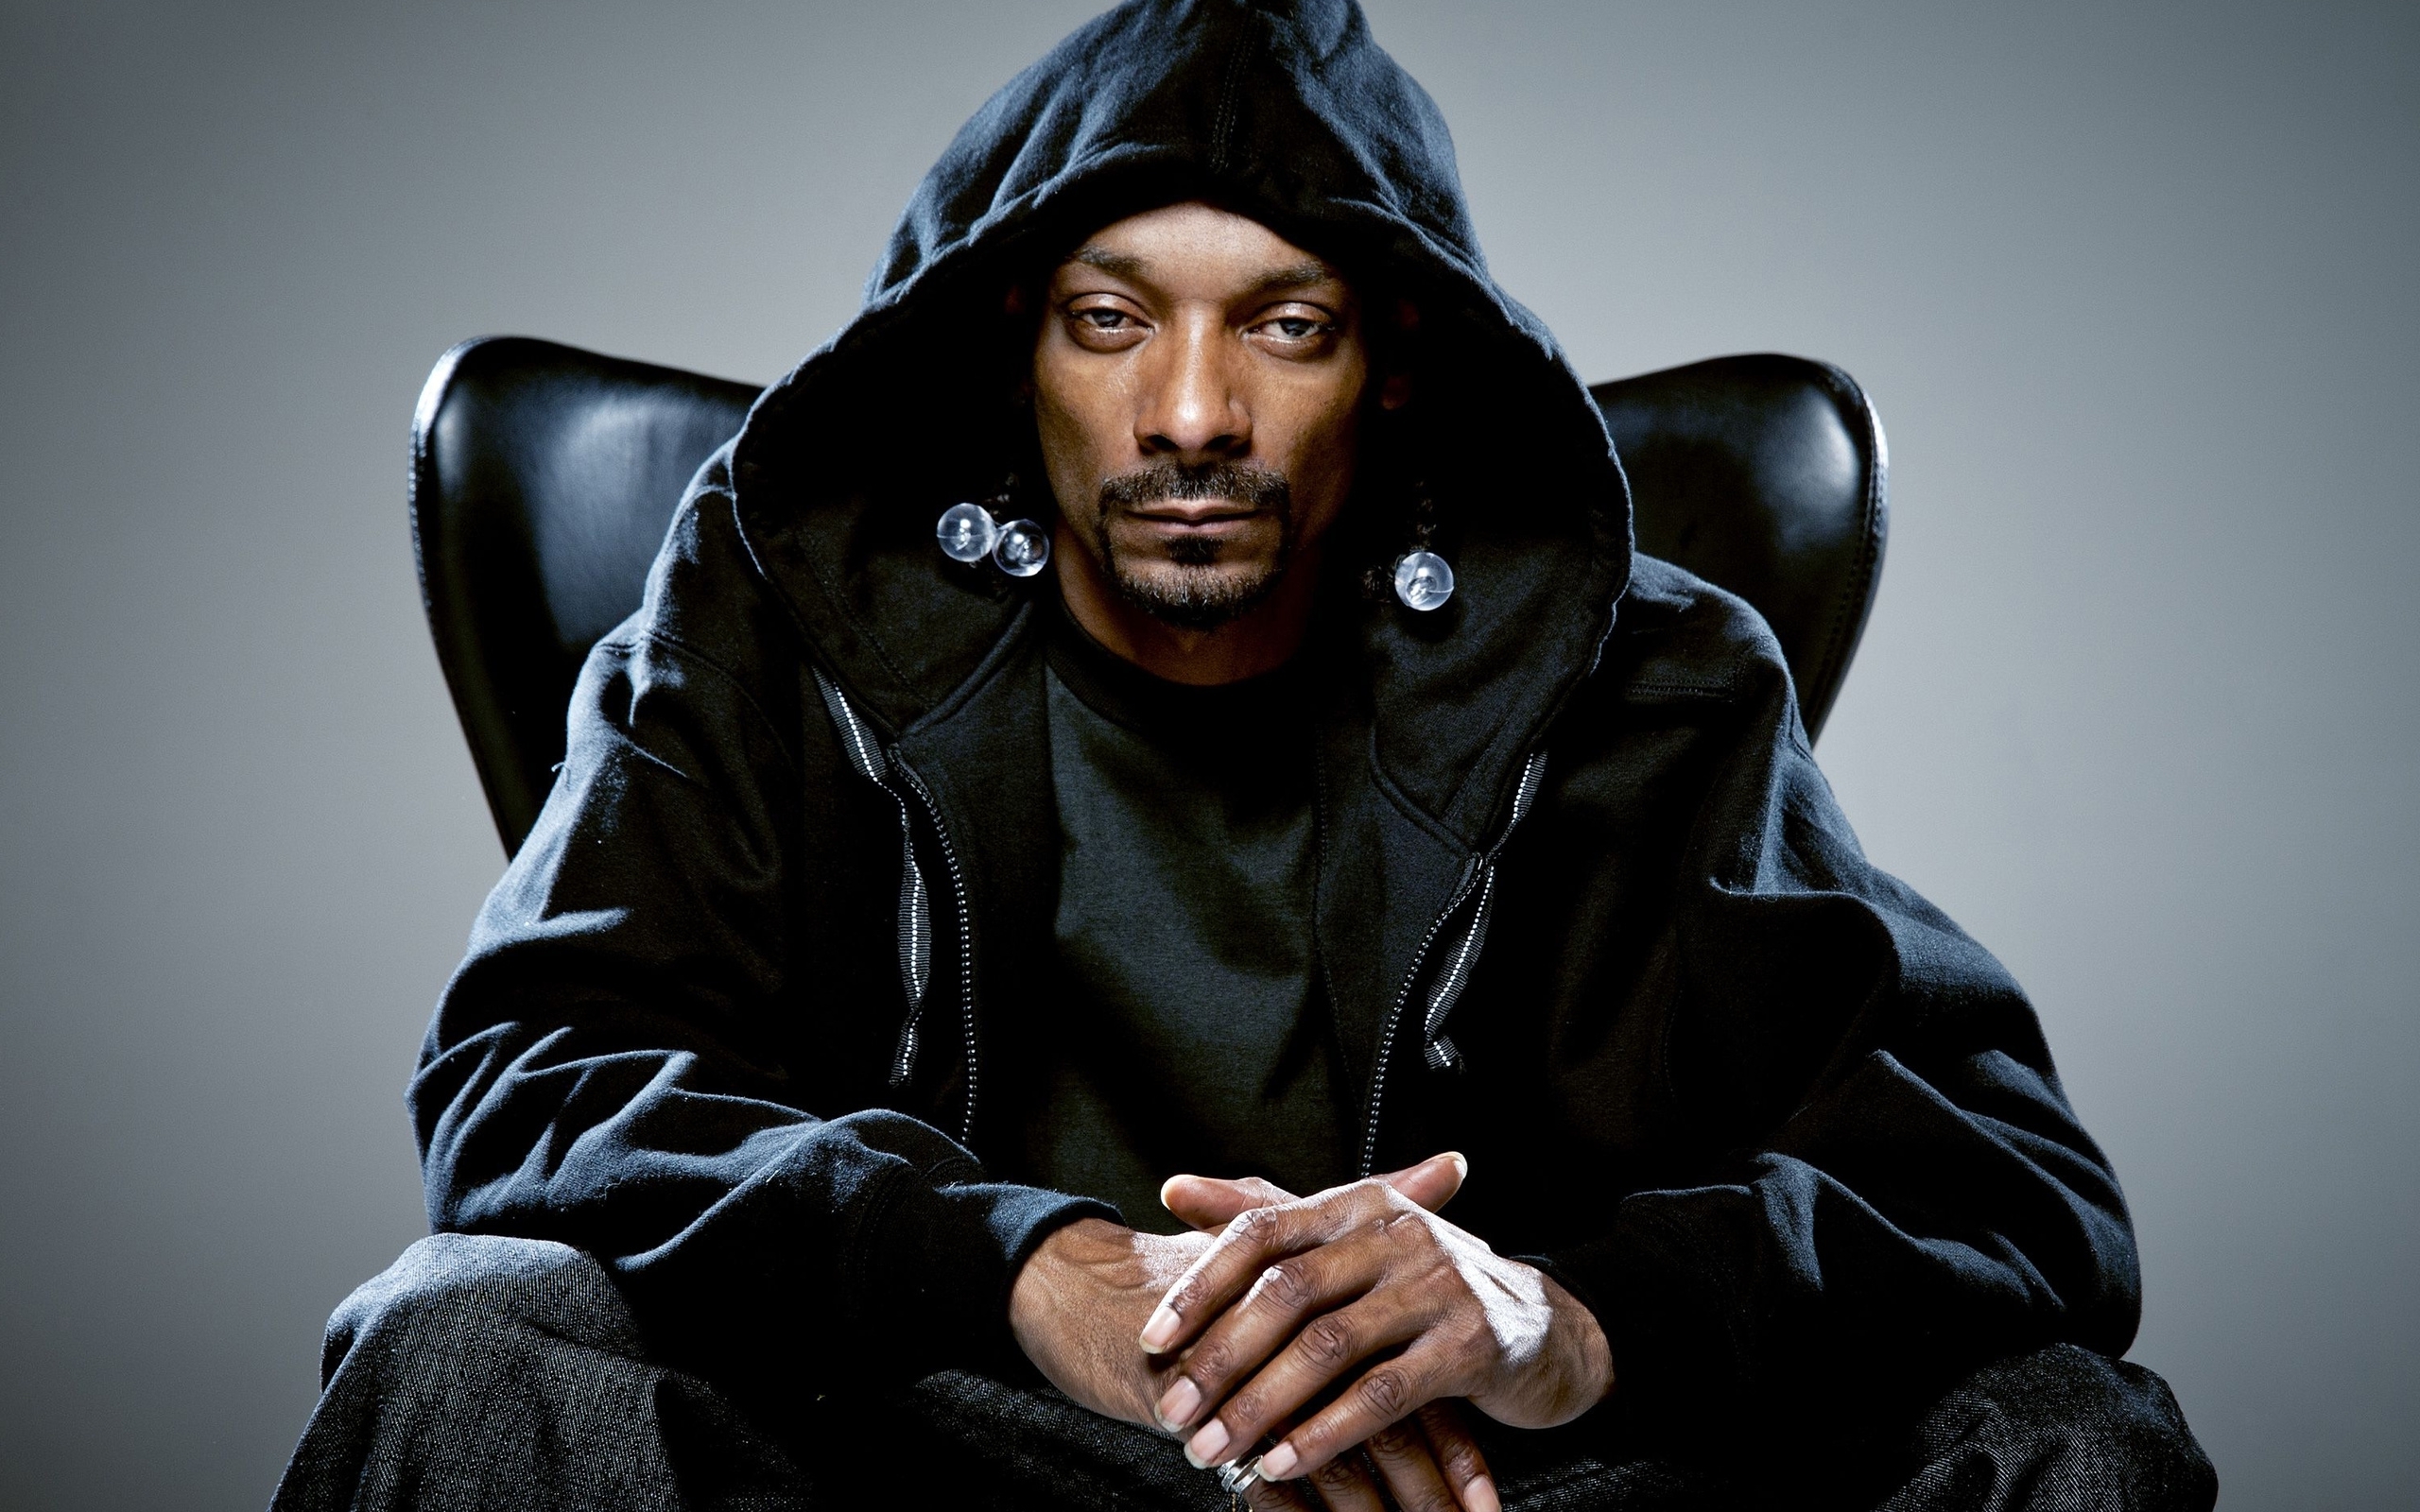 PE BUNE! Snoop Dogg chiar vine la Bogata. A făcut anunțul pe Facebook